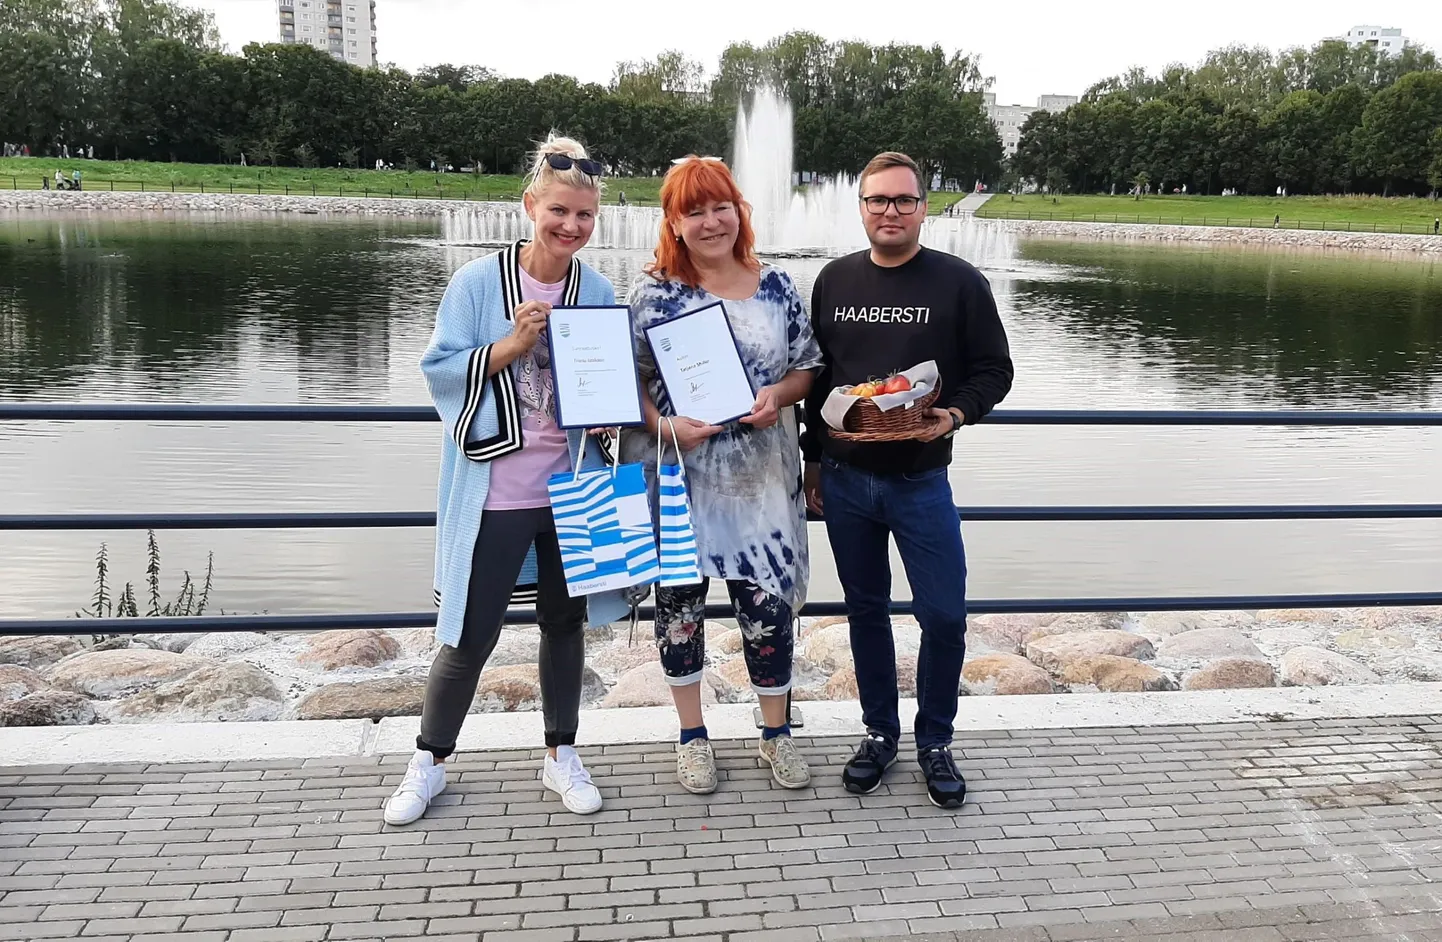 Победители конкурса Трийну Яаксон и Татьяна Шилко со старейшиной района Олегом Сильяновым.